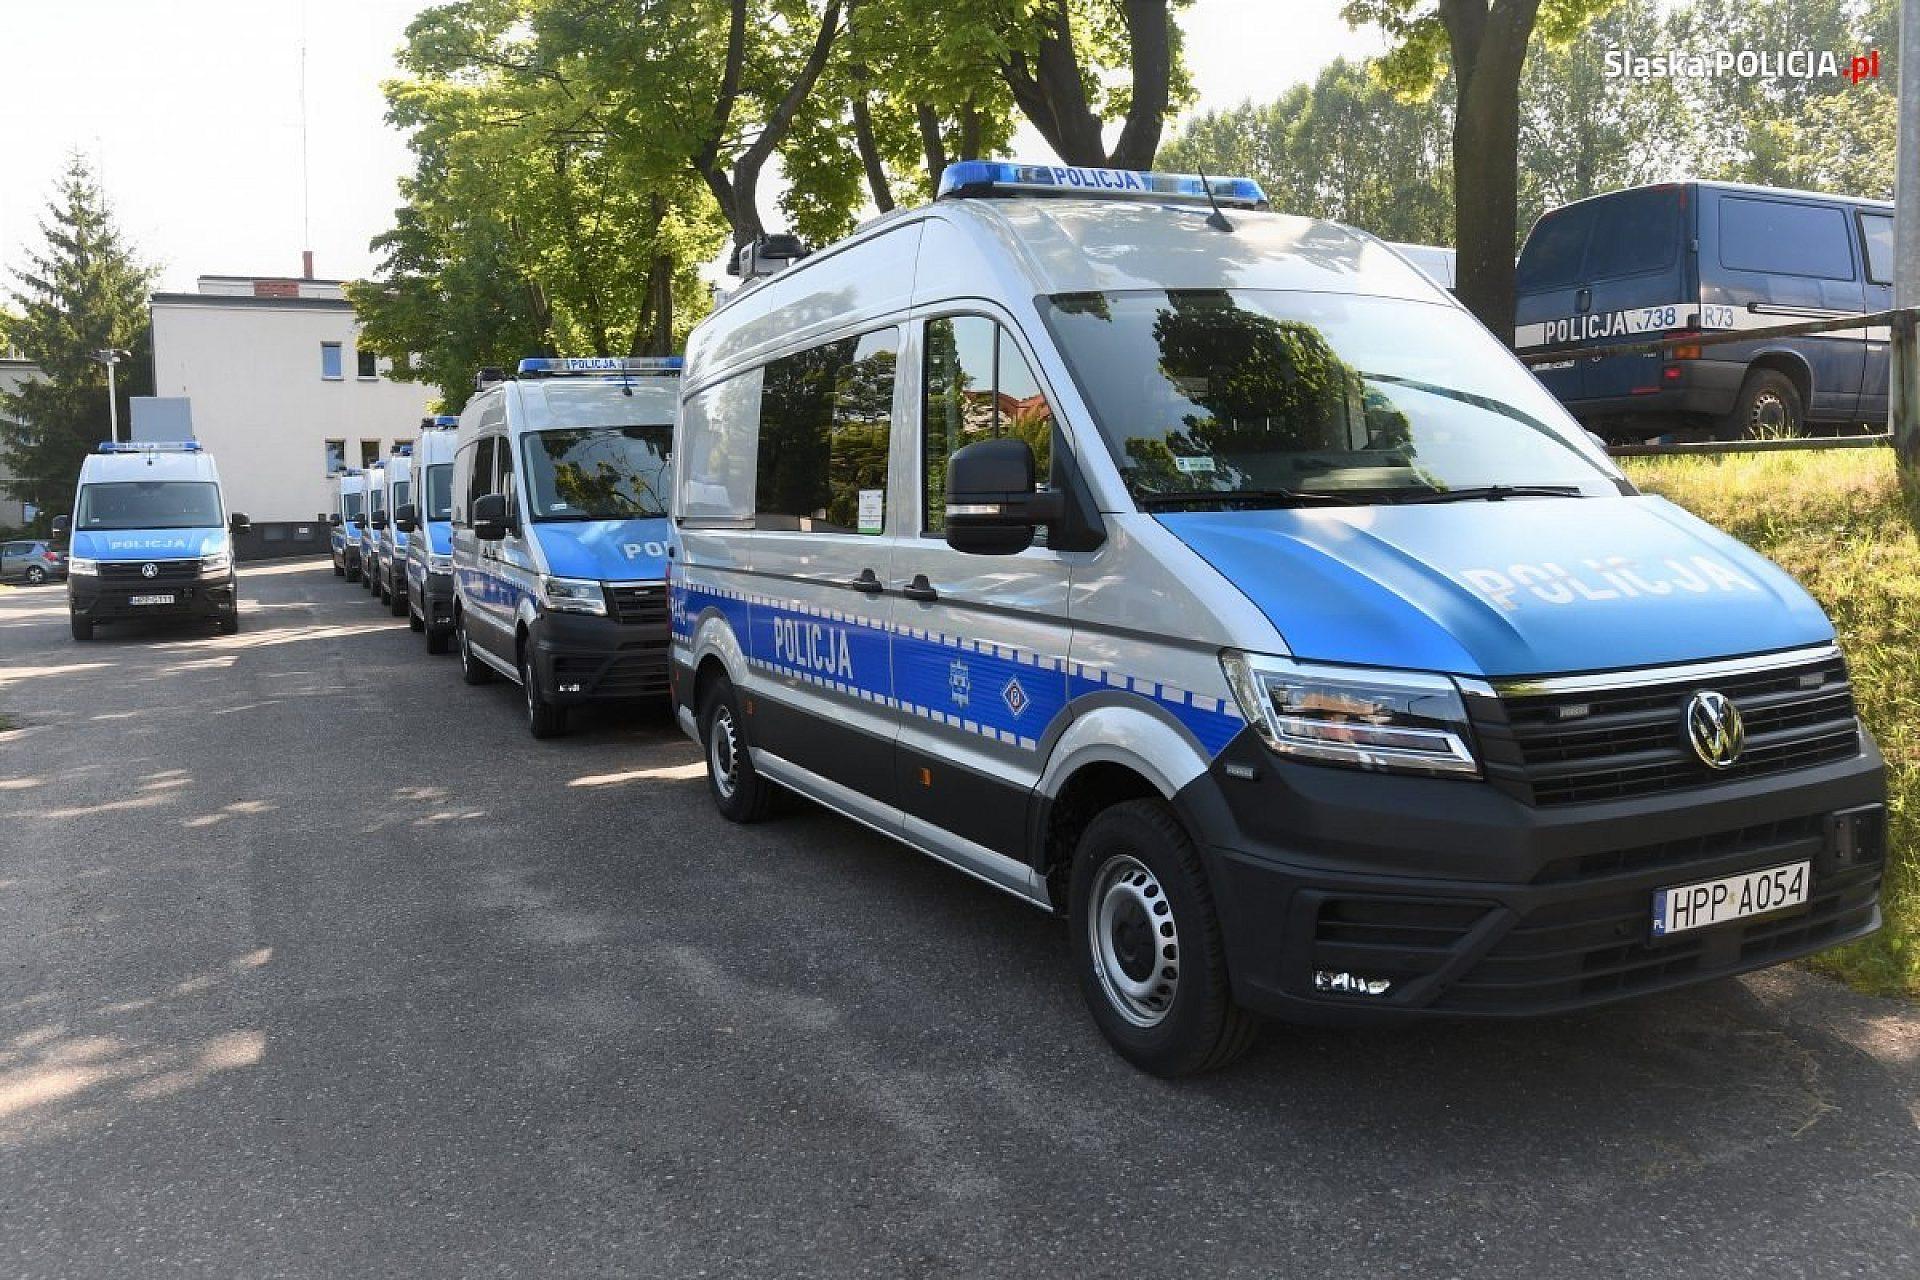 Nowe samochody śląskiej policji, kupione w 2021 r.